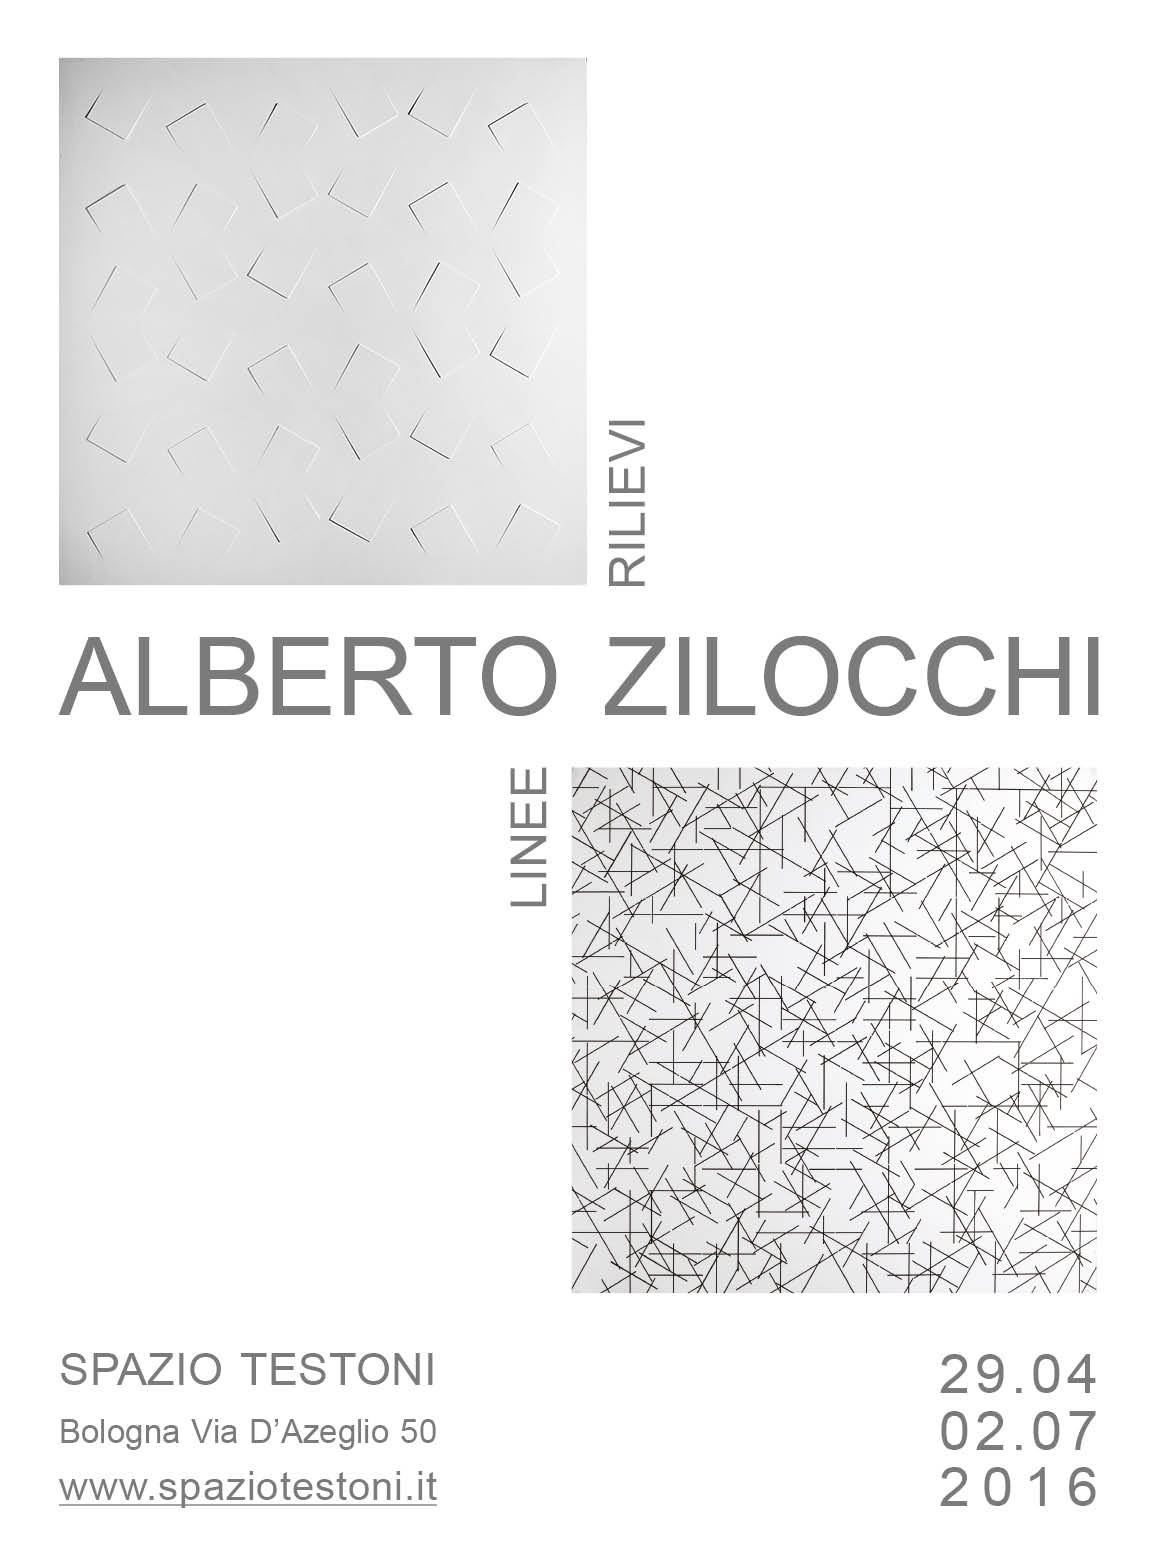 Alberto Zilocchi - Rilievi e linee